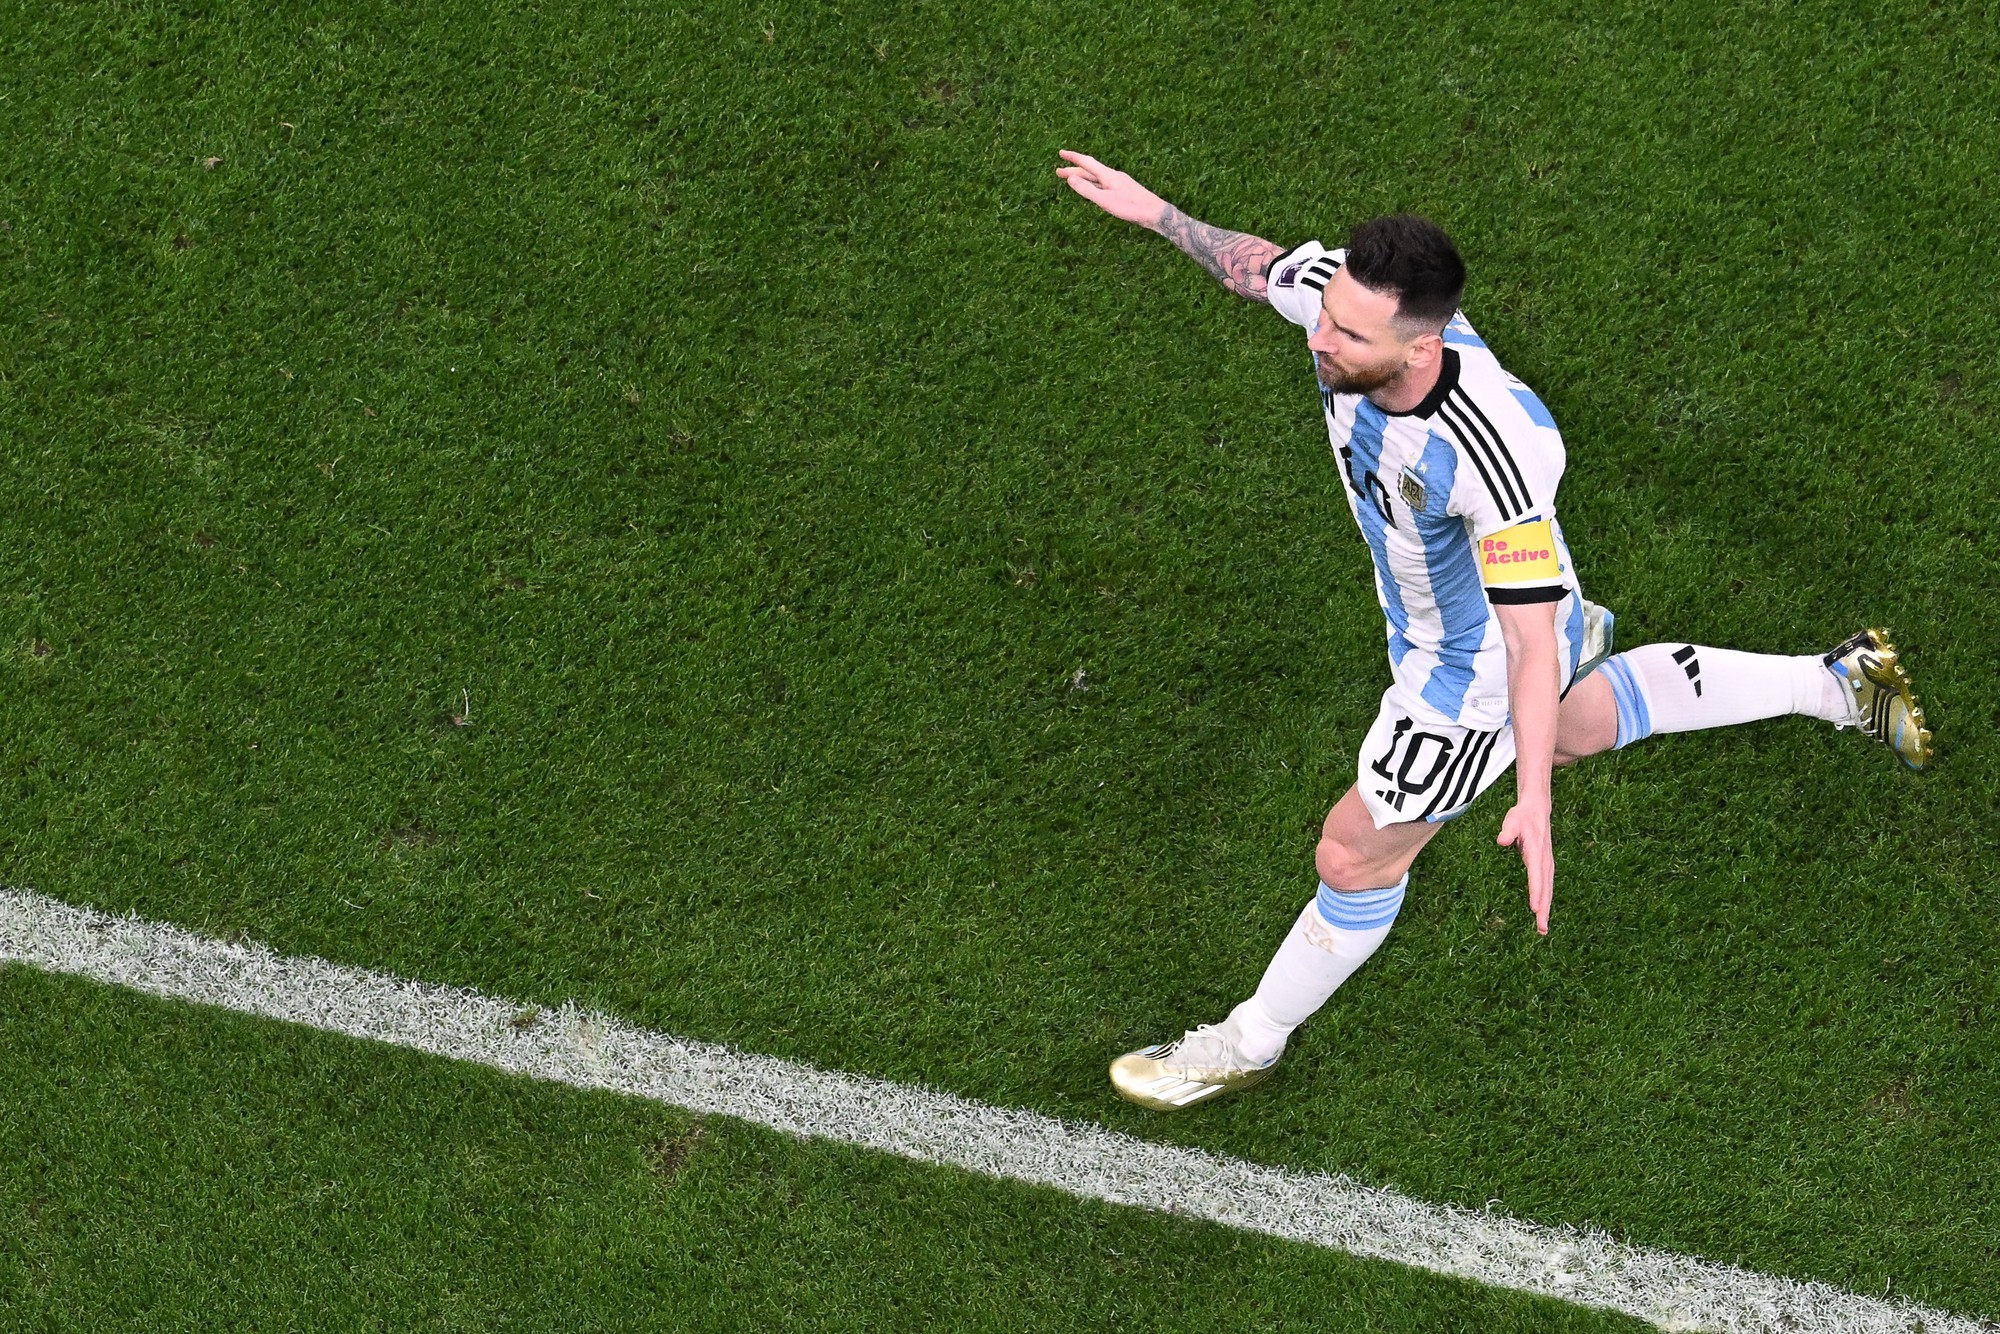 Lionel Messi cân bằng thành tích ở World Cup với Lothar Matthaus, Diego Maradona, chuẩn bị vượt Paolo Maldini - Ảnh 1.